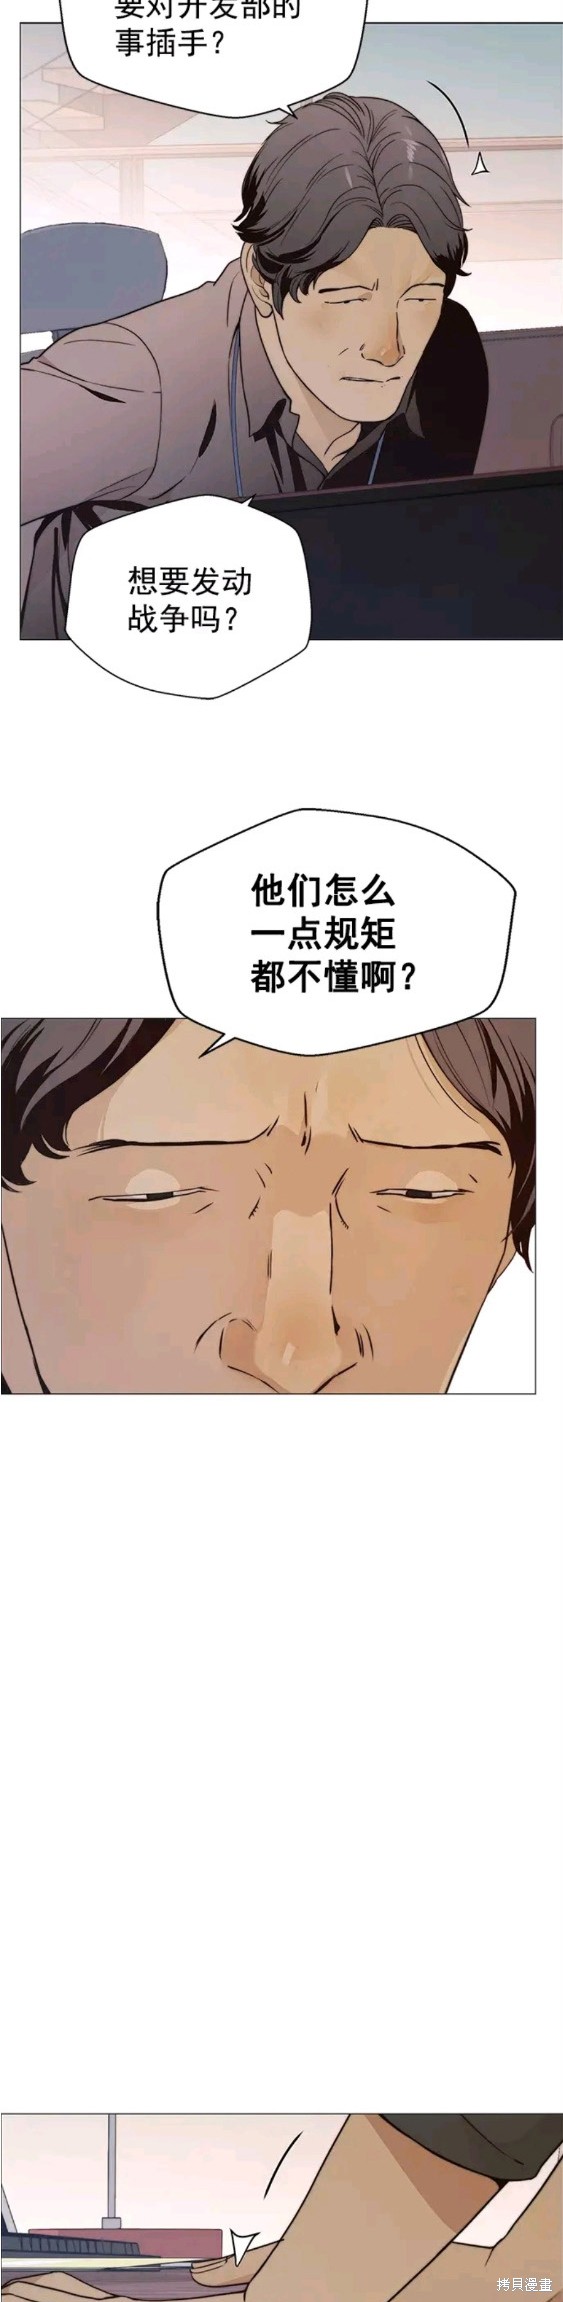 男子汉漫画,第99话15图